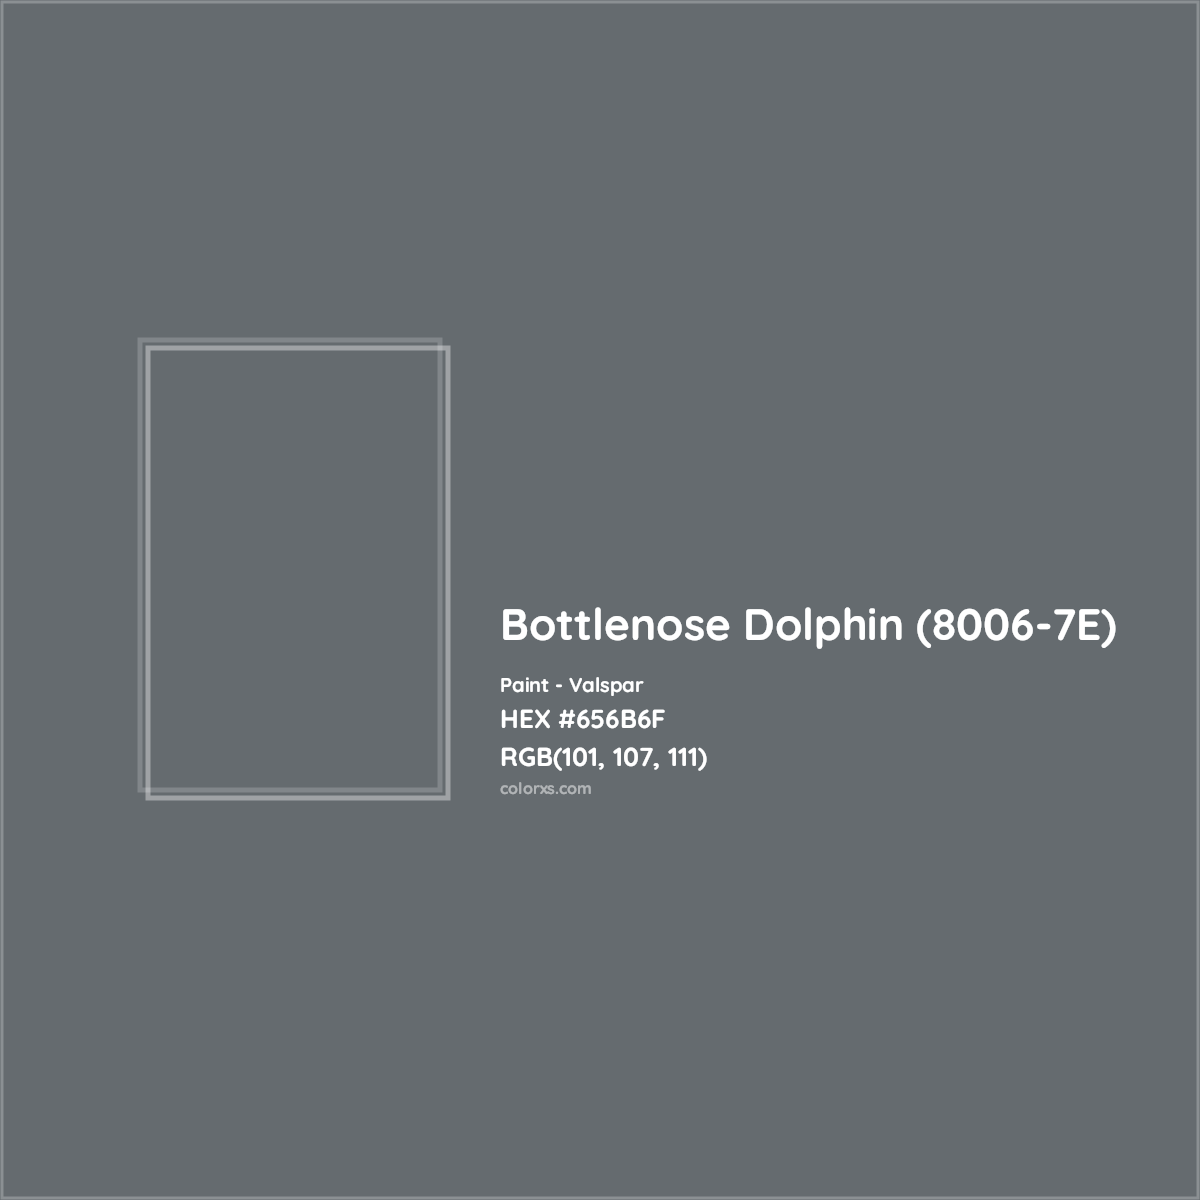 HEX #656B6F Bottlenose Dolphin (8006-7E) Paint Valspar - Color Code